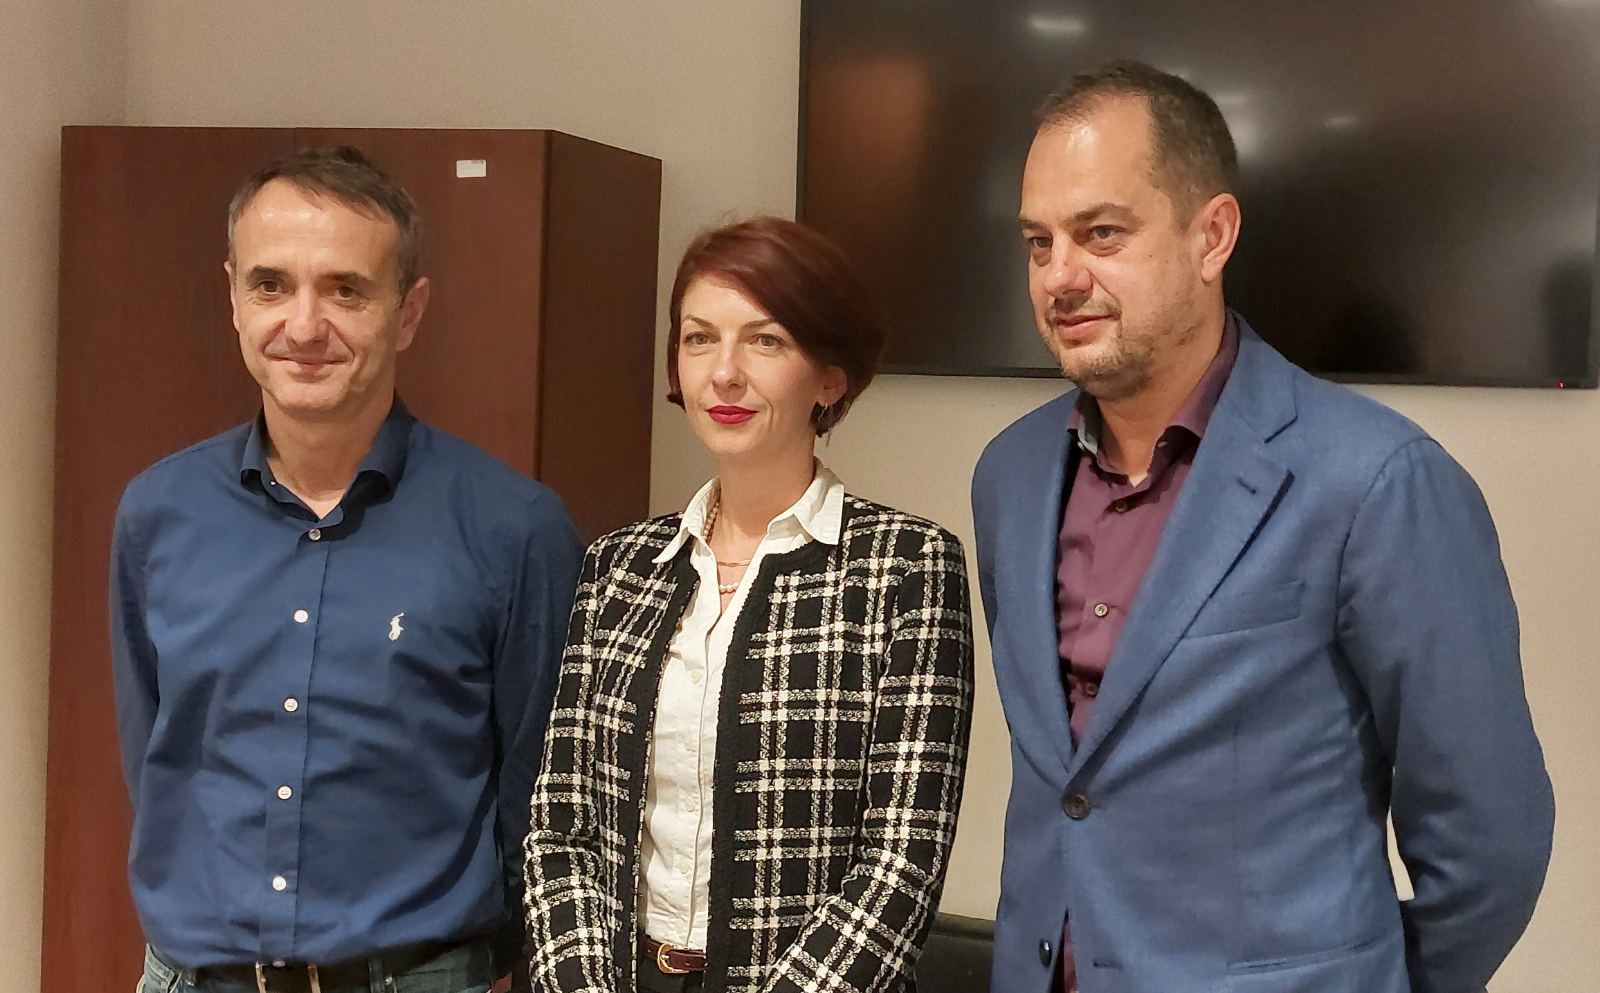 Обвинителката Искра Хаџи Василева ќе се грижи за заштита на новинарите - само траба да ѝ се јавите - Република